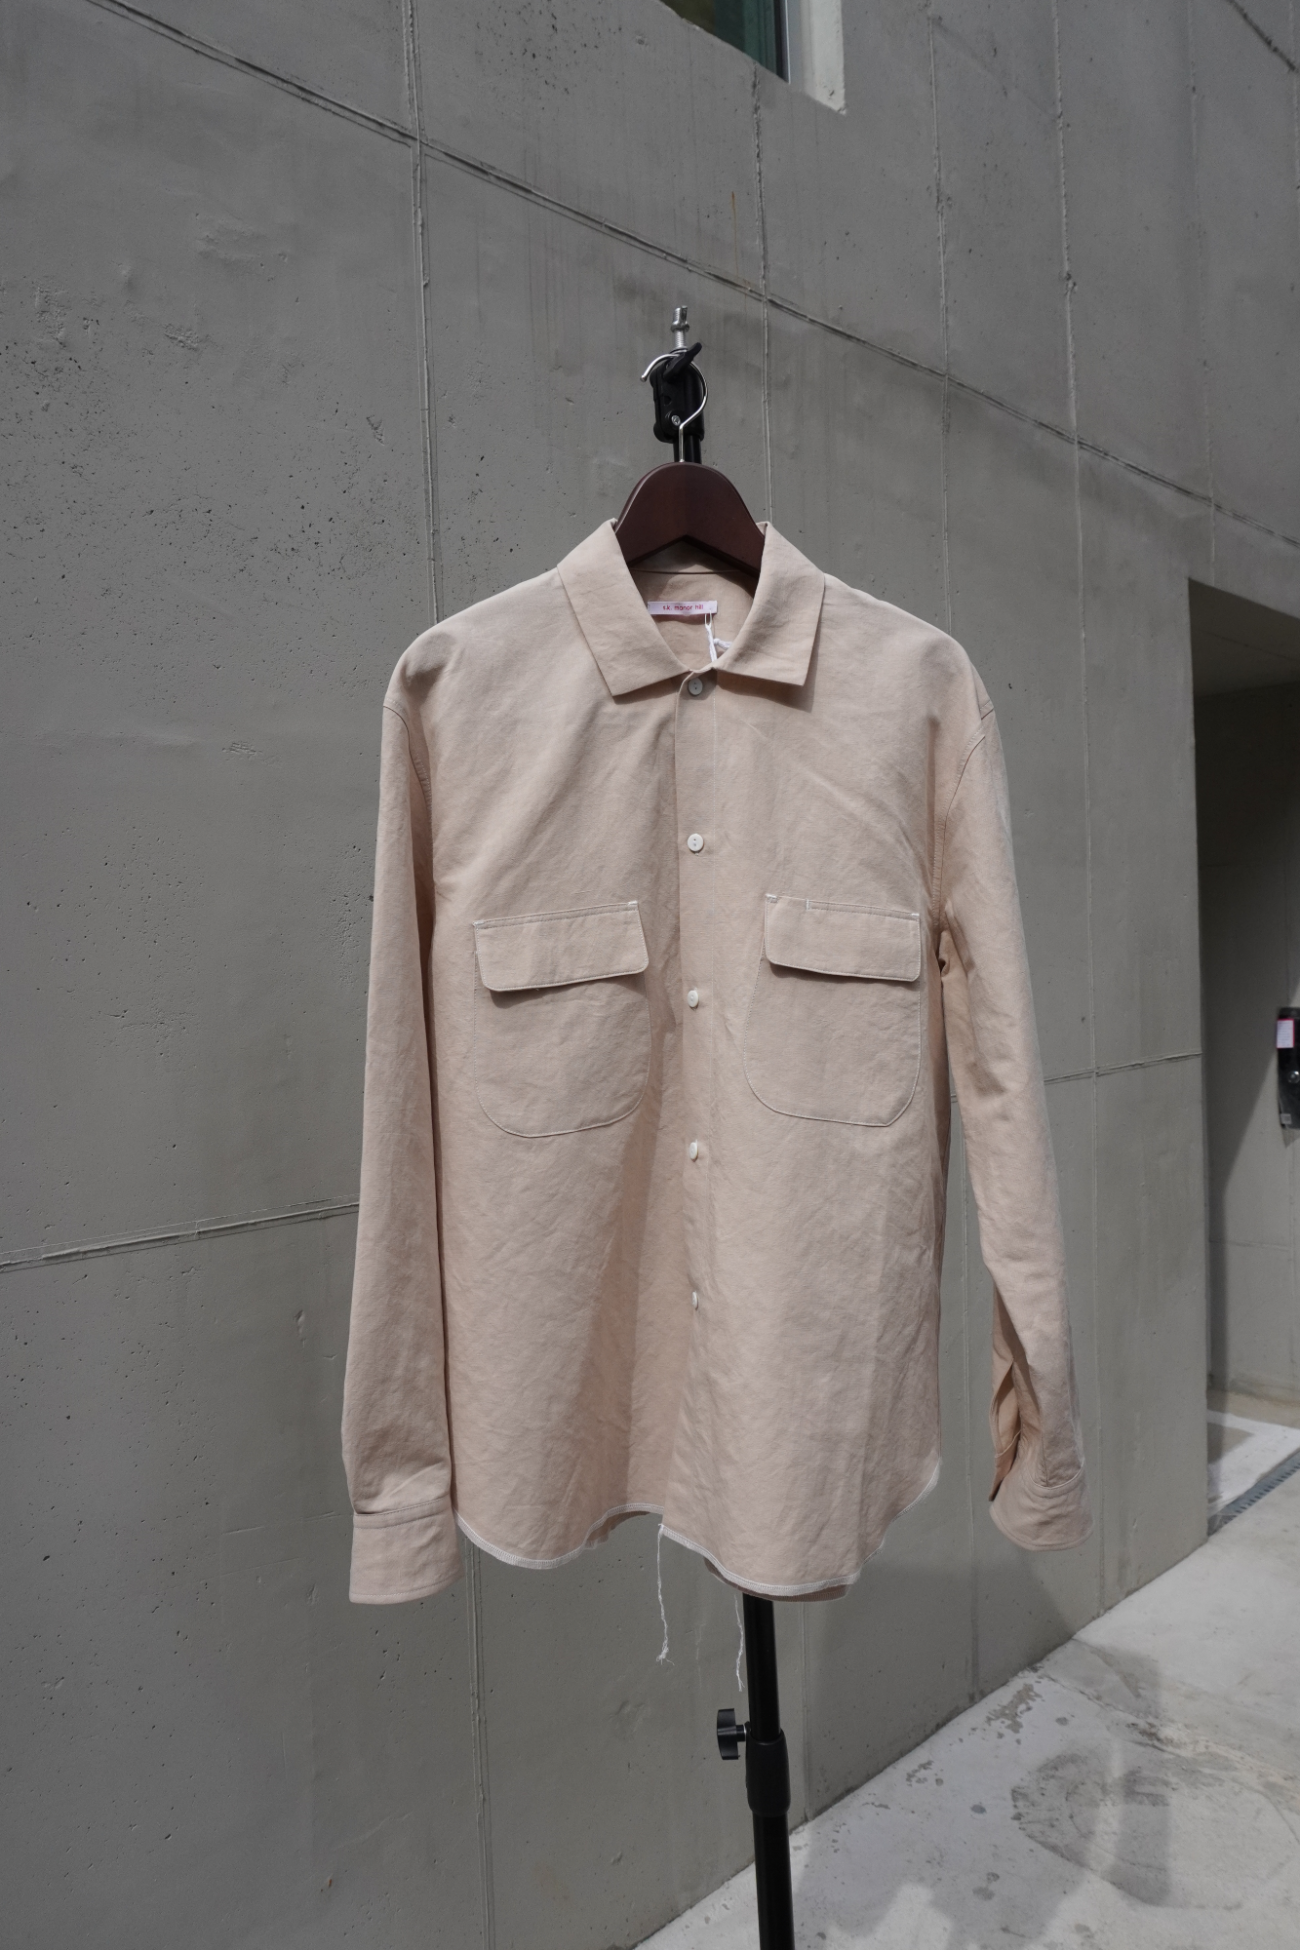 [S.K. MANOR HILL] Moil Shirt - Beige Cotton/Linen